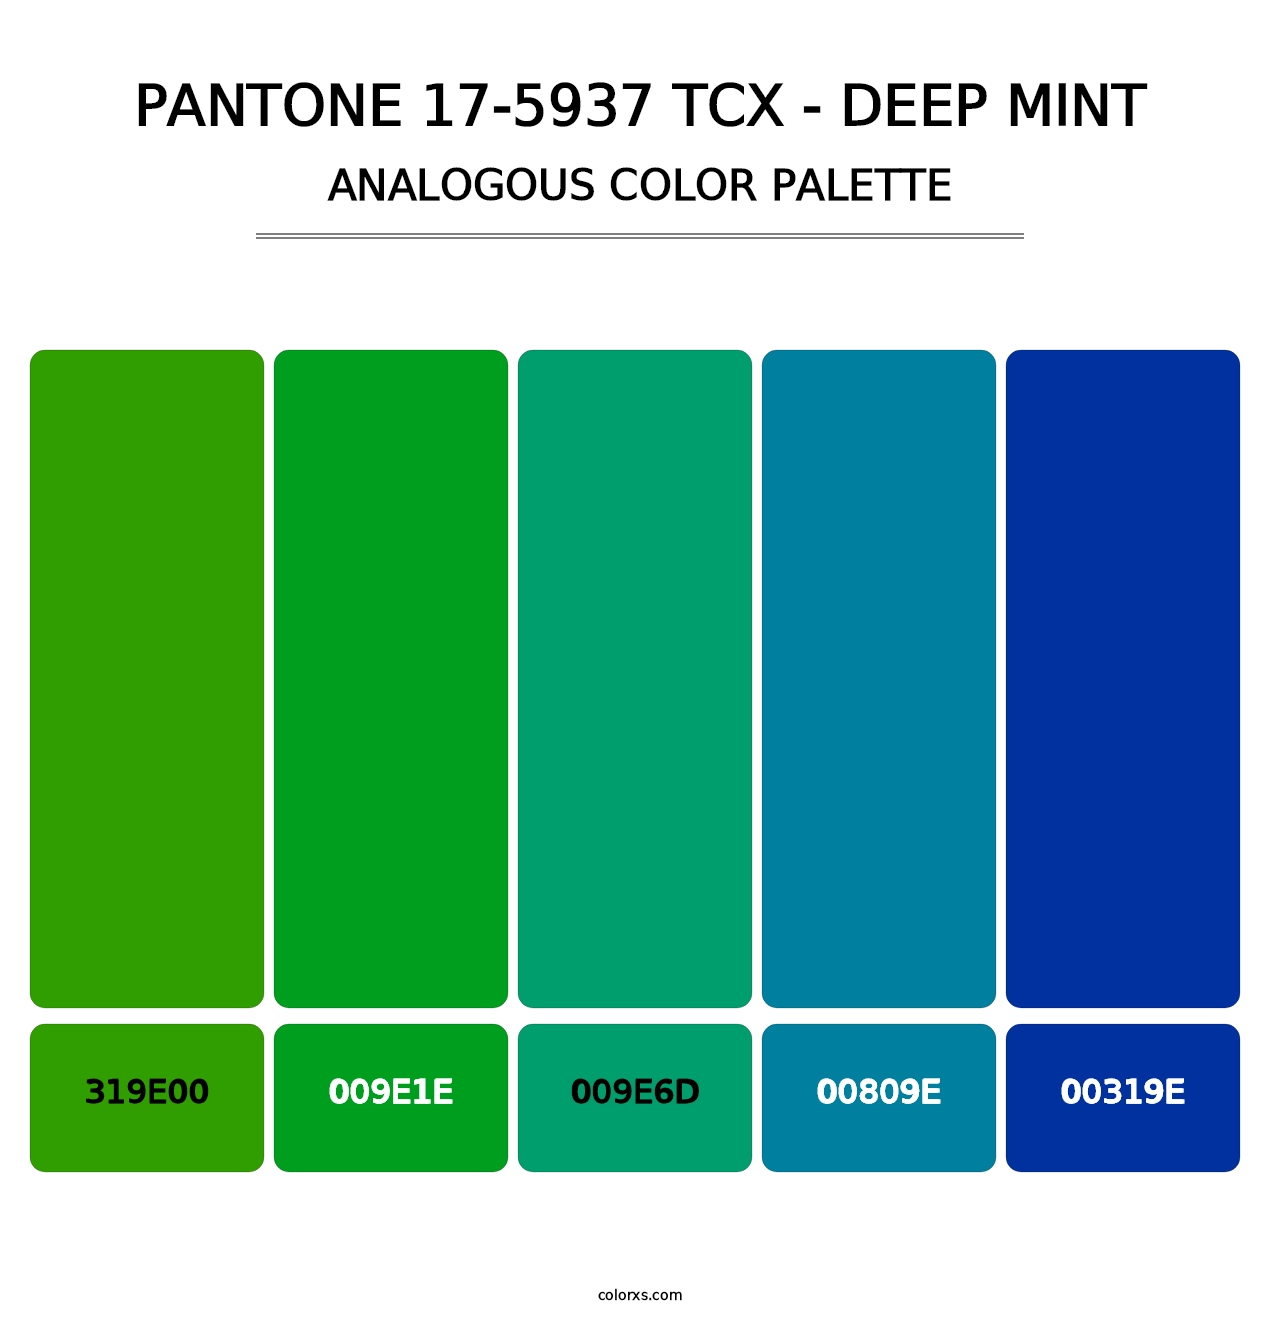 PANTONE 17-5937 TCX - Deep Mint - Analogous Color Palette